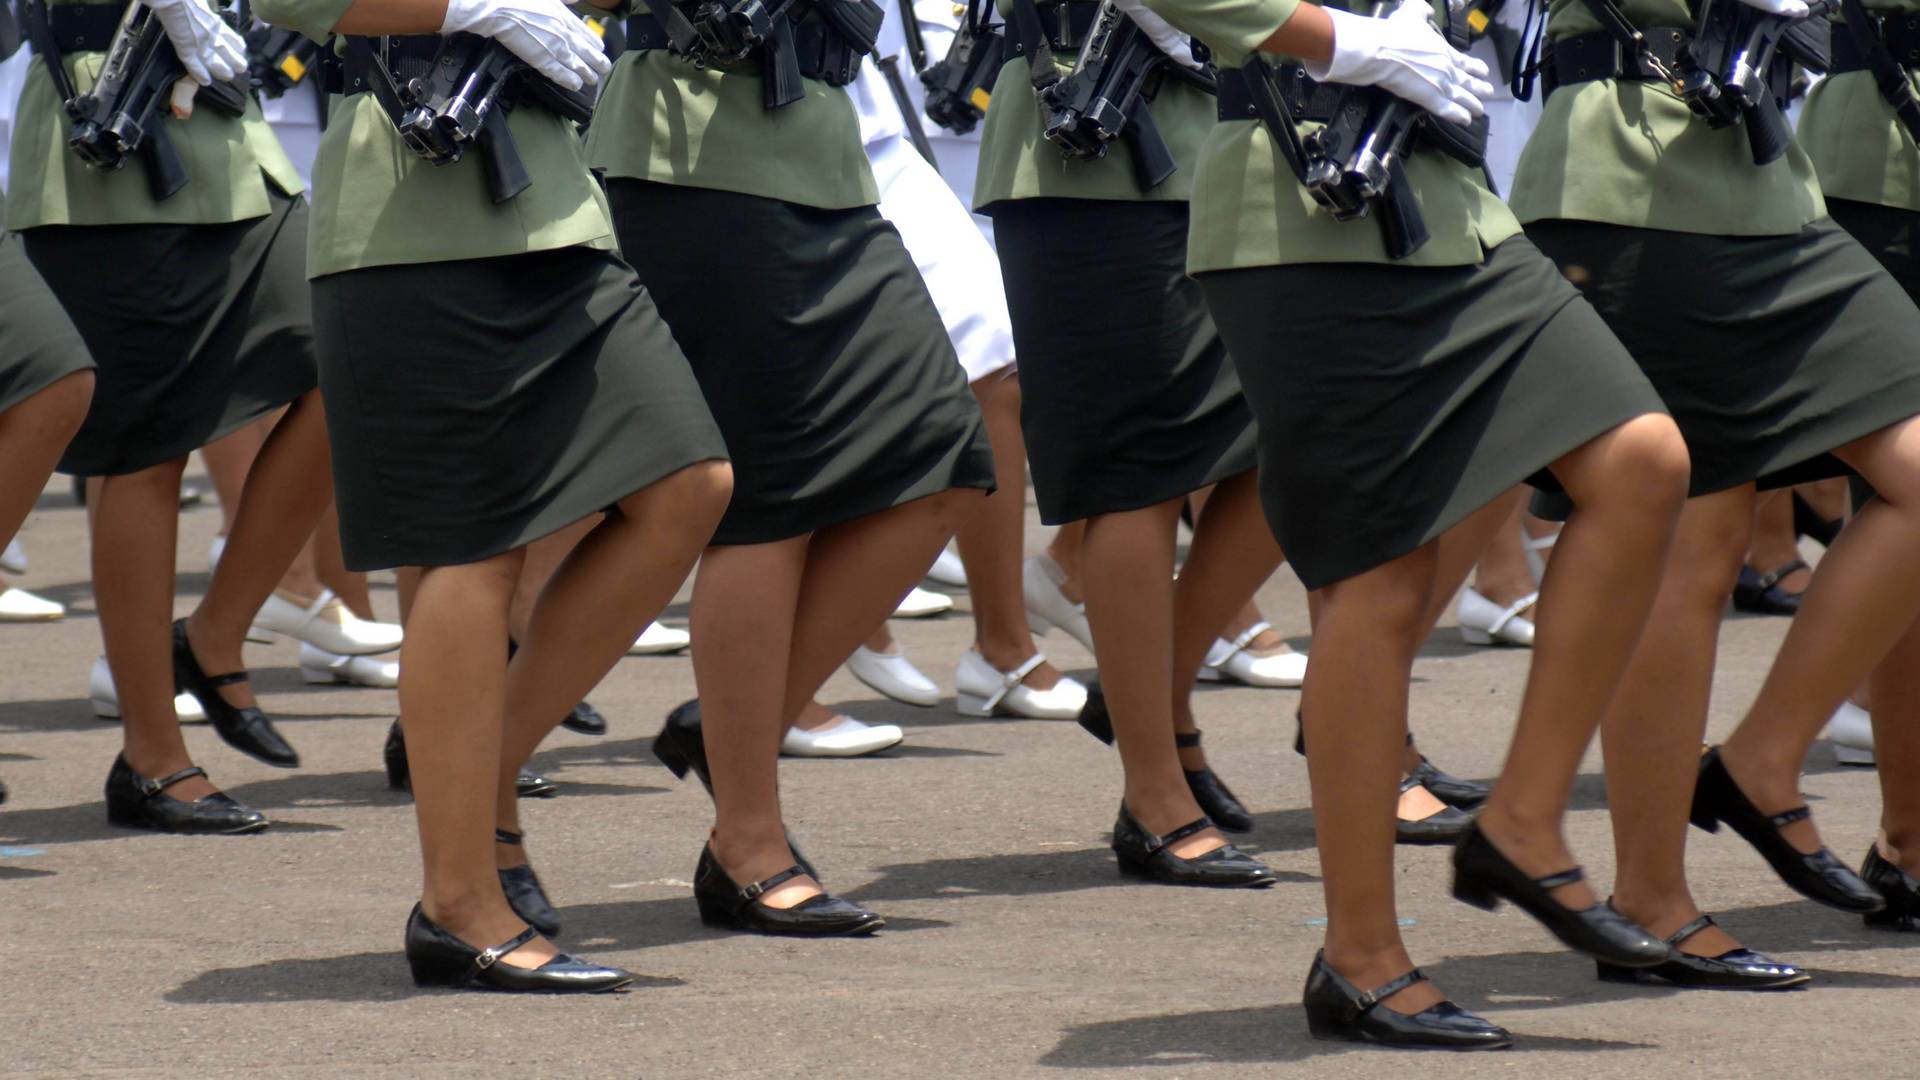 Aby dostać się do armii, muszą poddać się "testowi dziewictwa". Indonezja chce ukrócić ten proceder